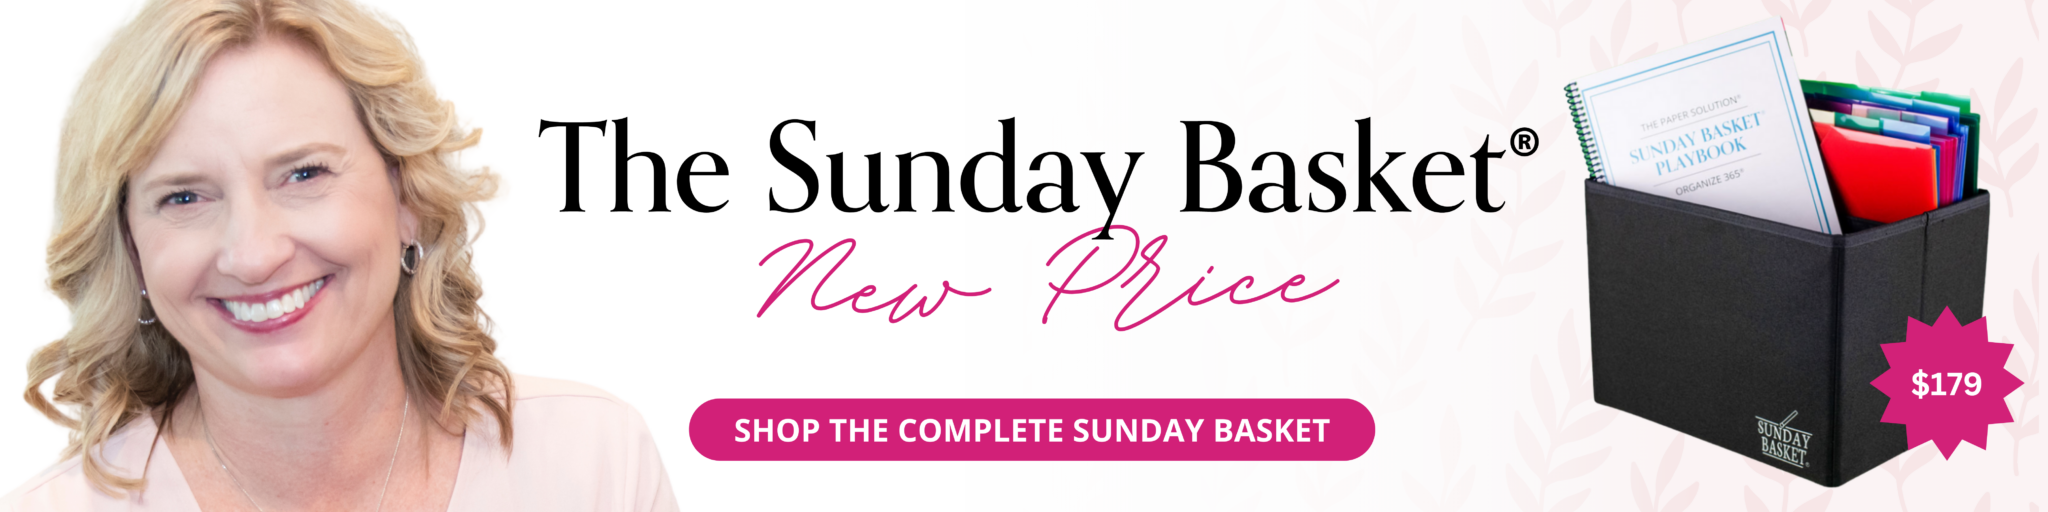 The Sunday Basket